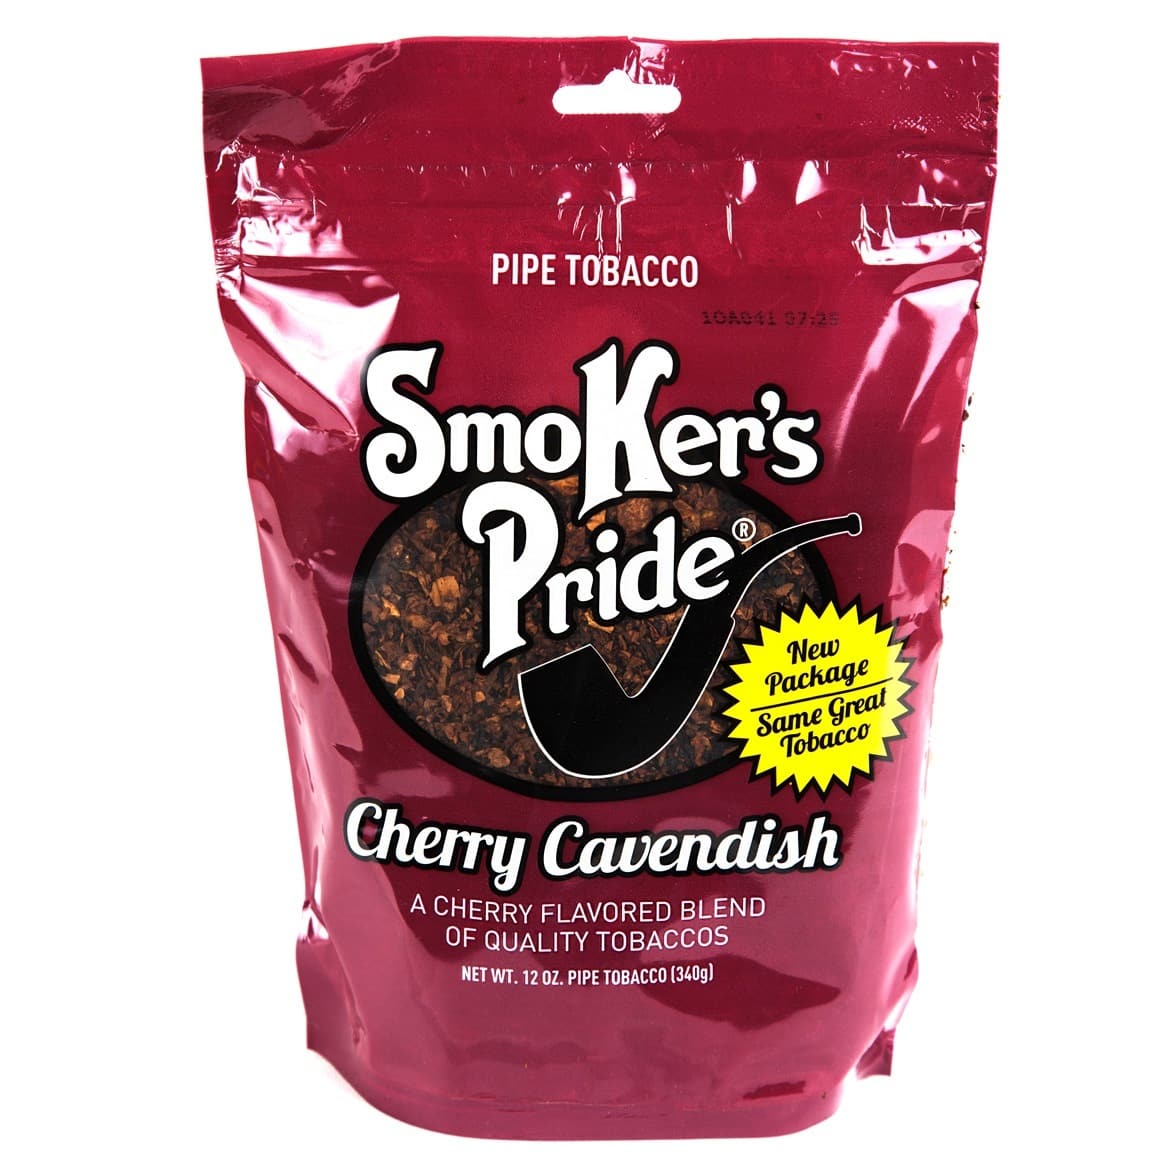 Smoker's Pride Cherry Cavendish